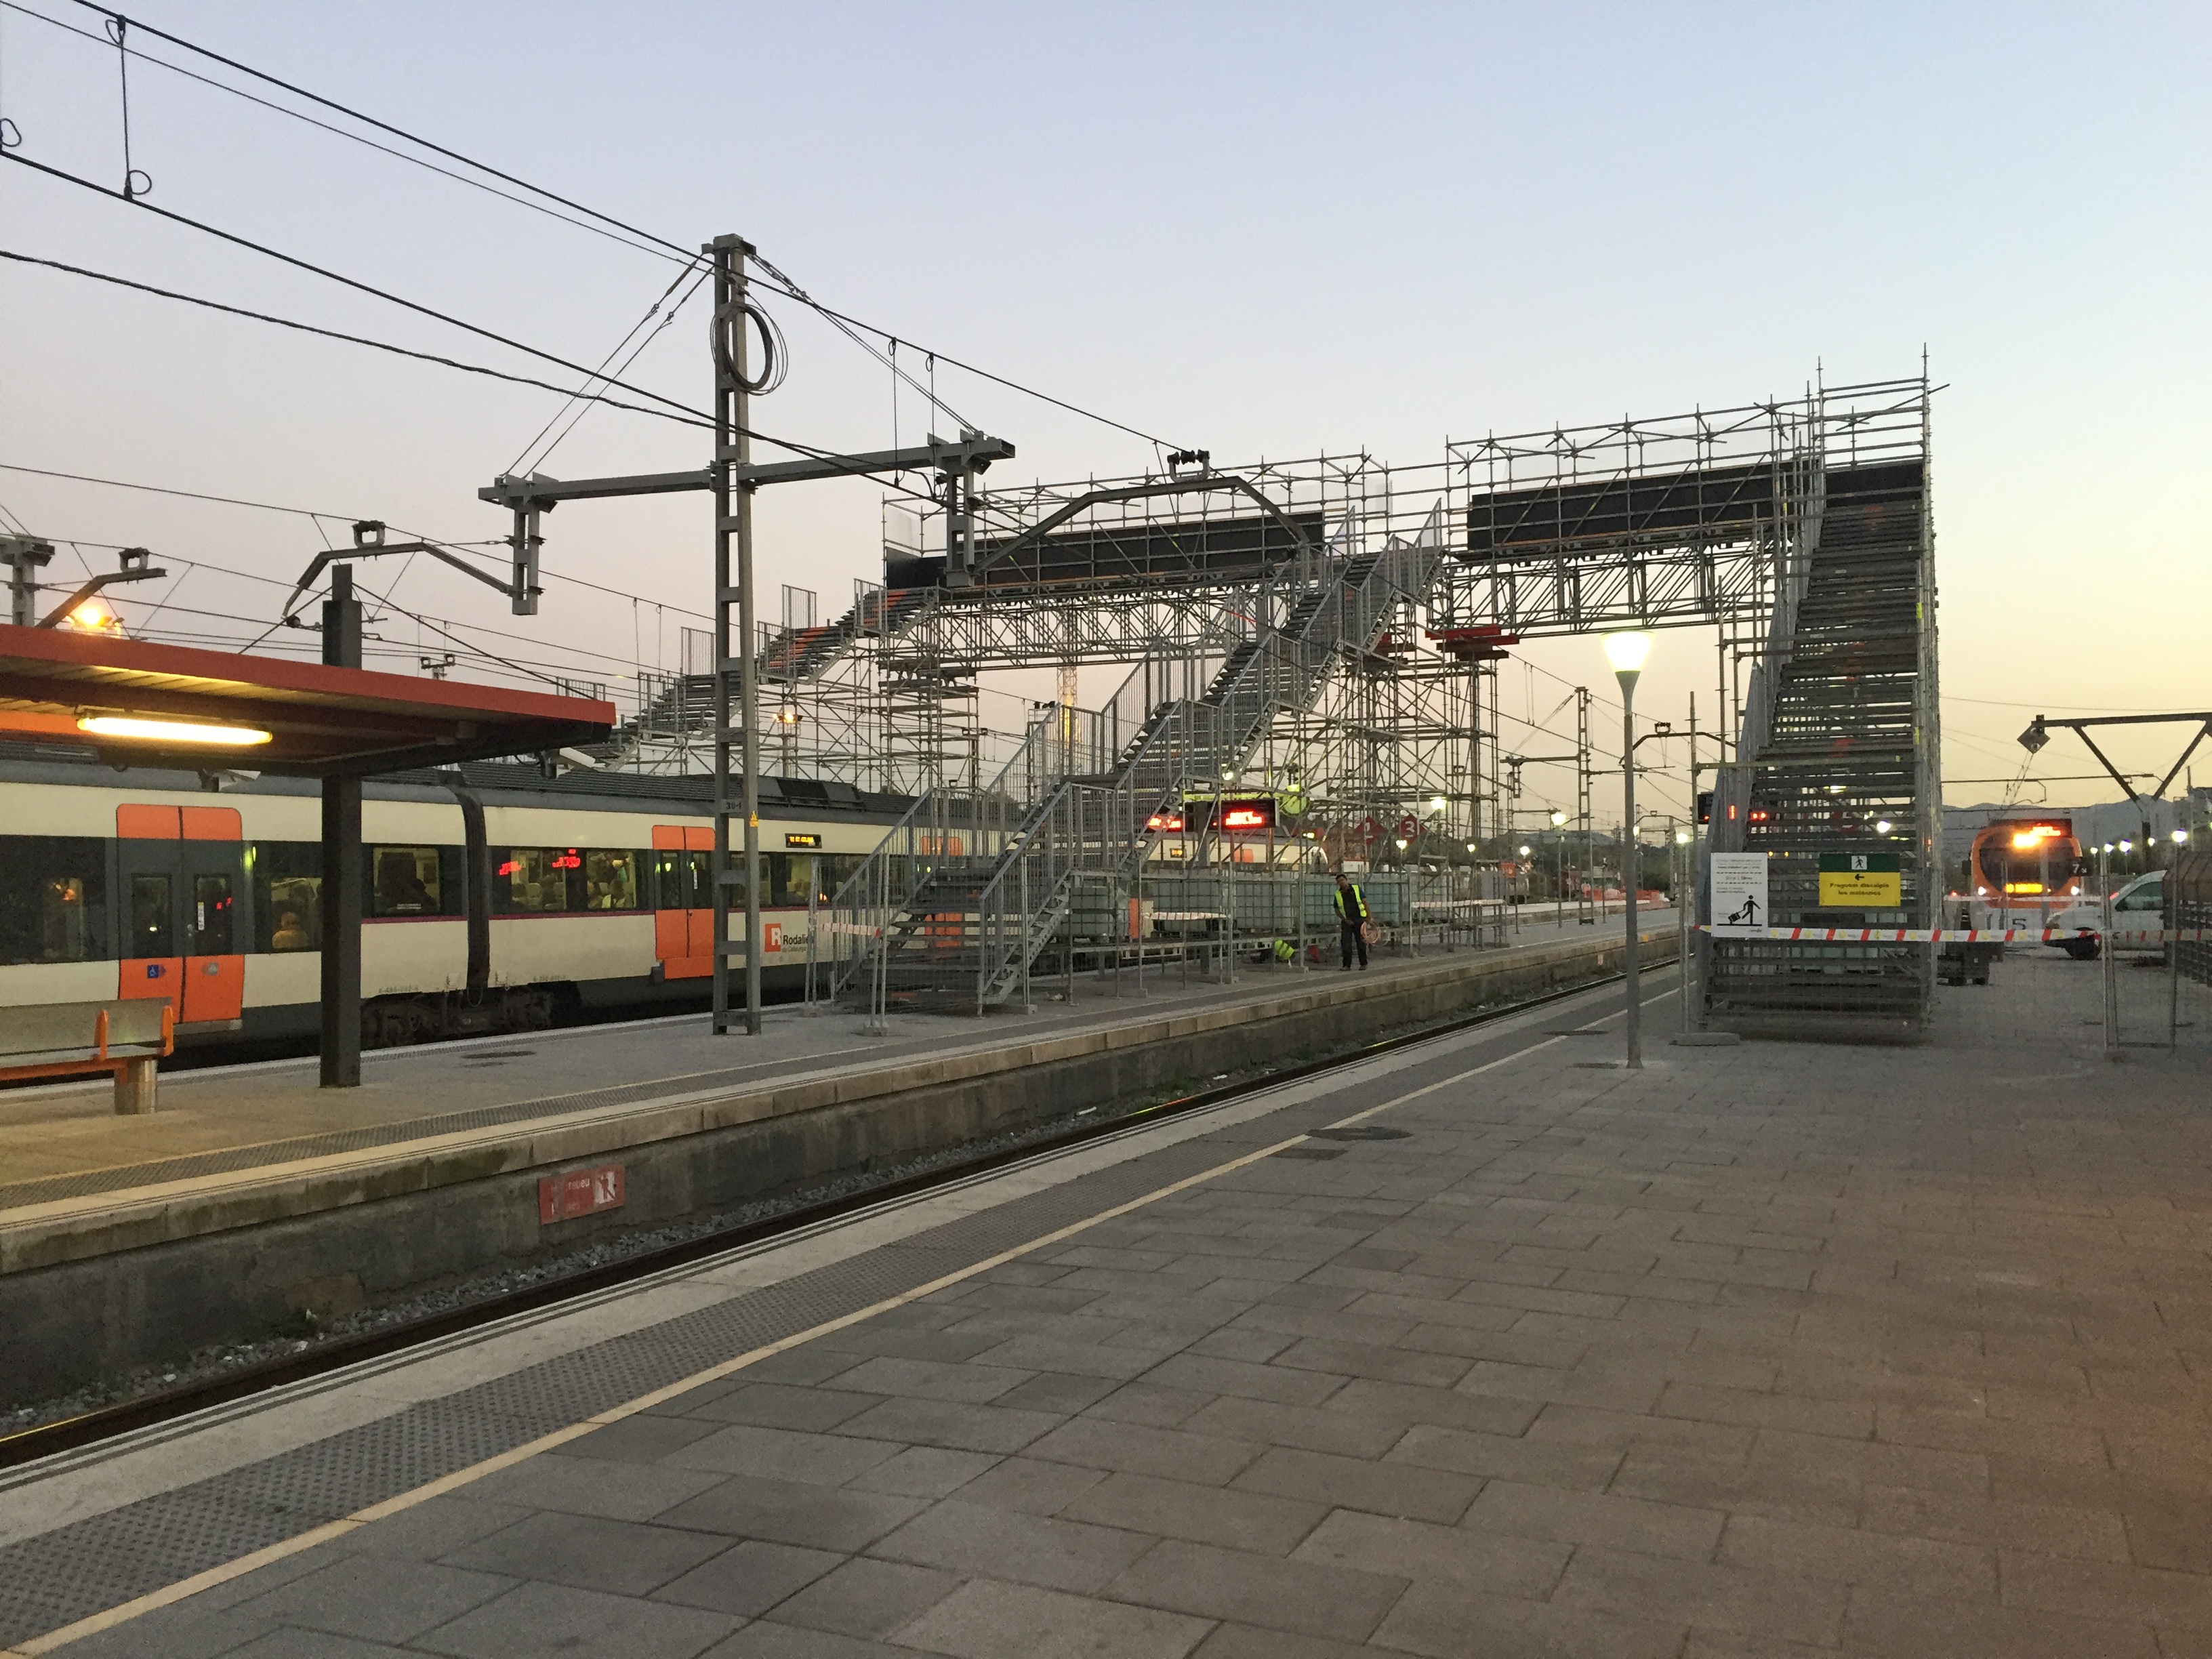 La passarel·la metàl·lica provisional muntada a l'estació